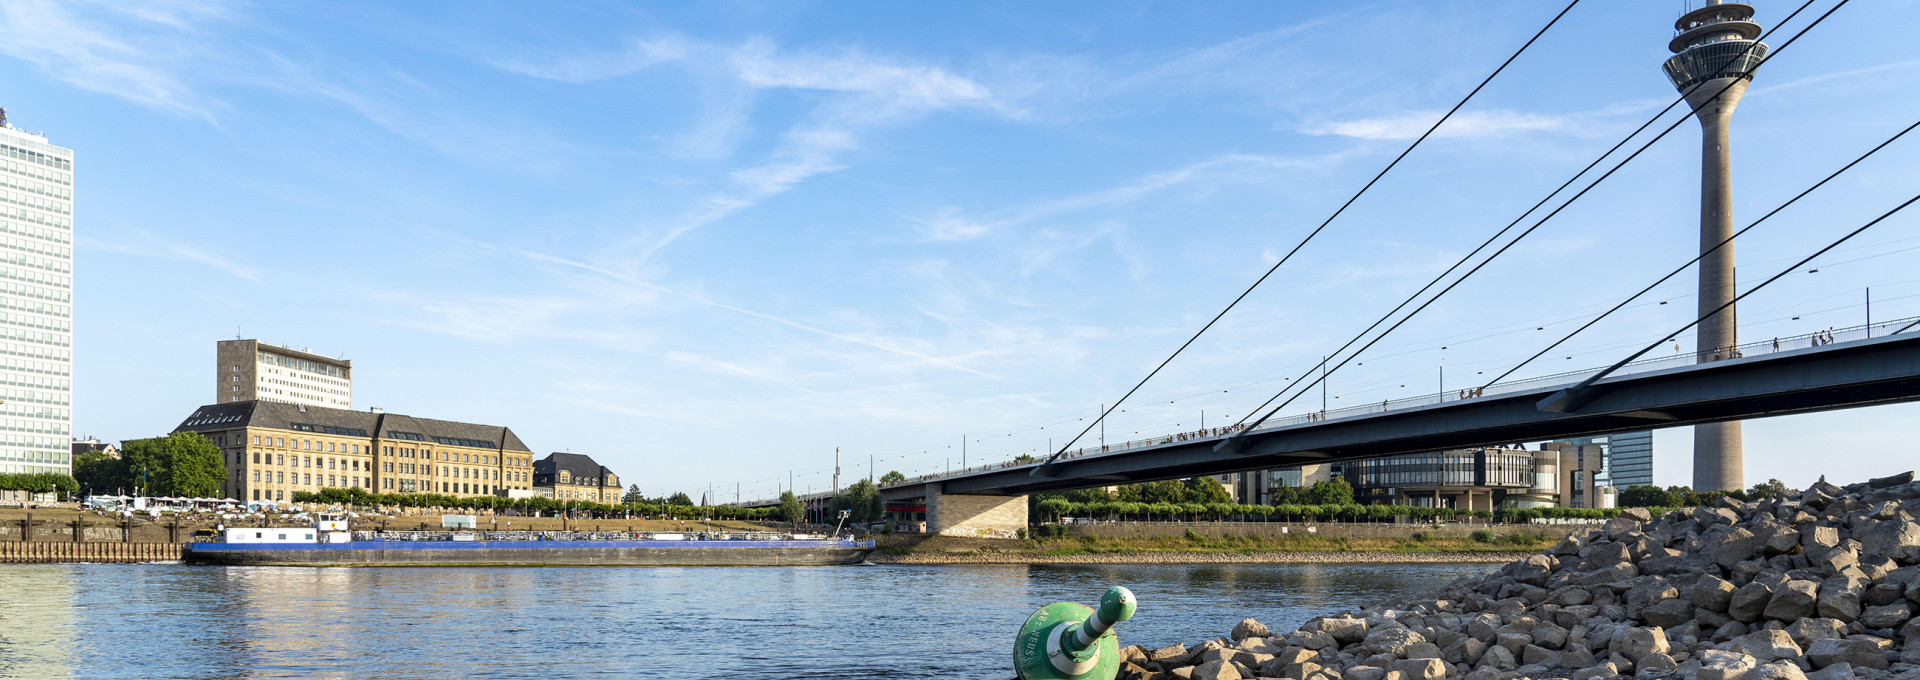 Rhein bei Düsseldorf, extremes Niedrigwasser unter Brücke, ein Frachtschiff passiert den Fluss. (2022)